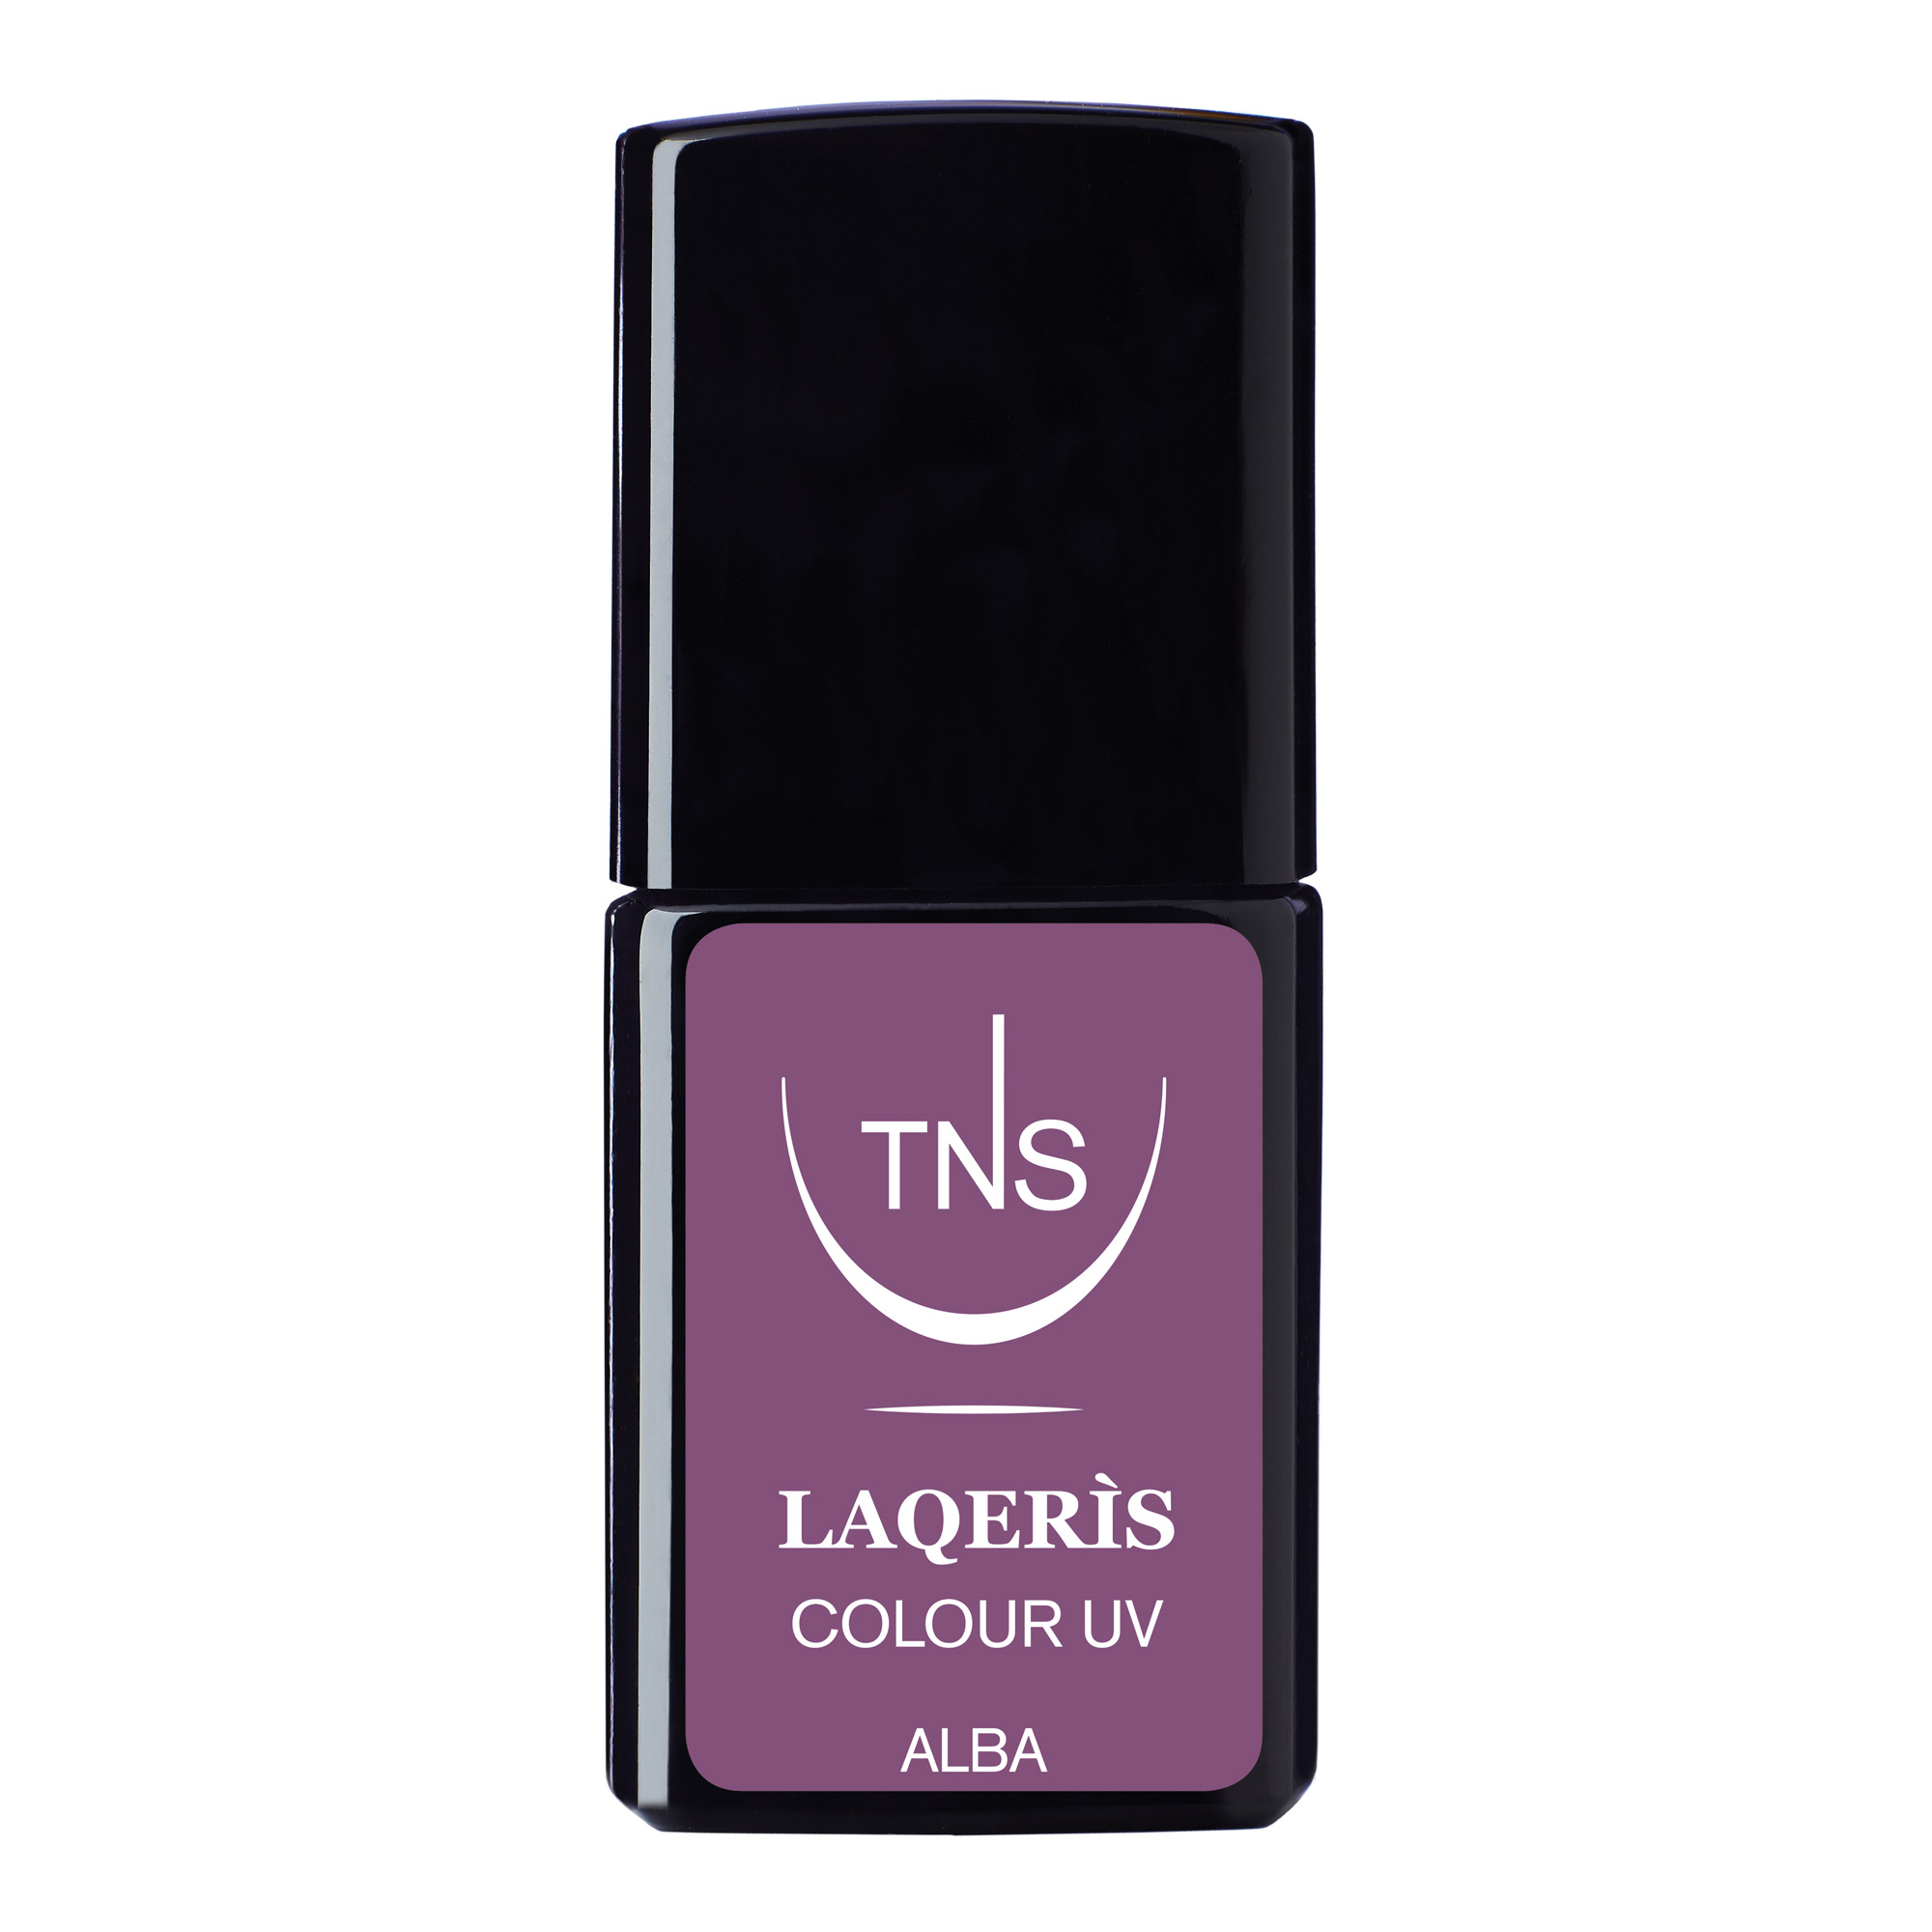 Semi-permanent nail polish lilac Alba 10 ml Laqerìs TNS